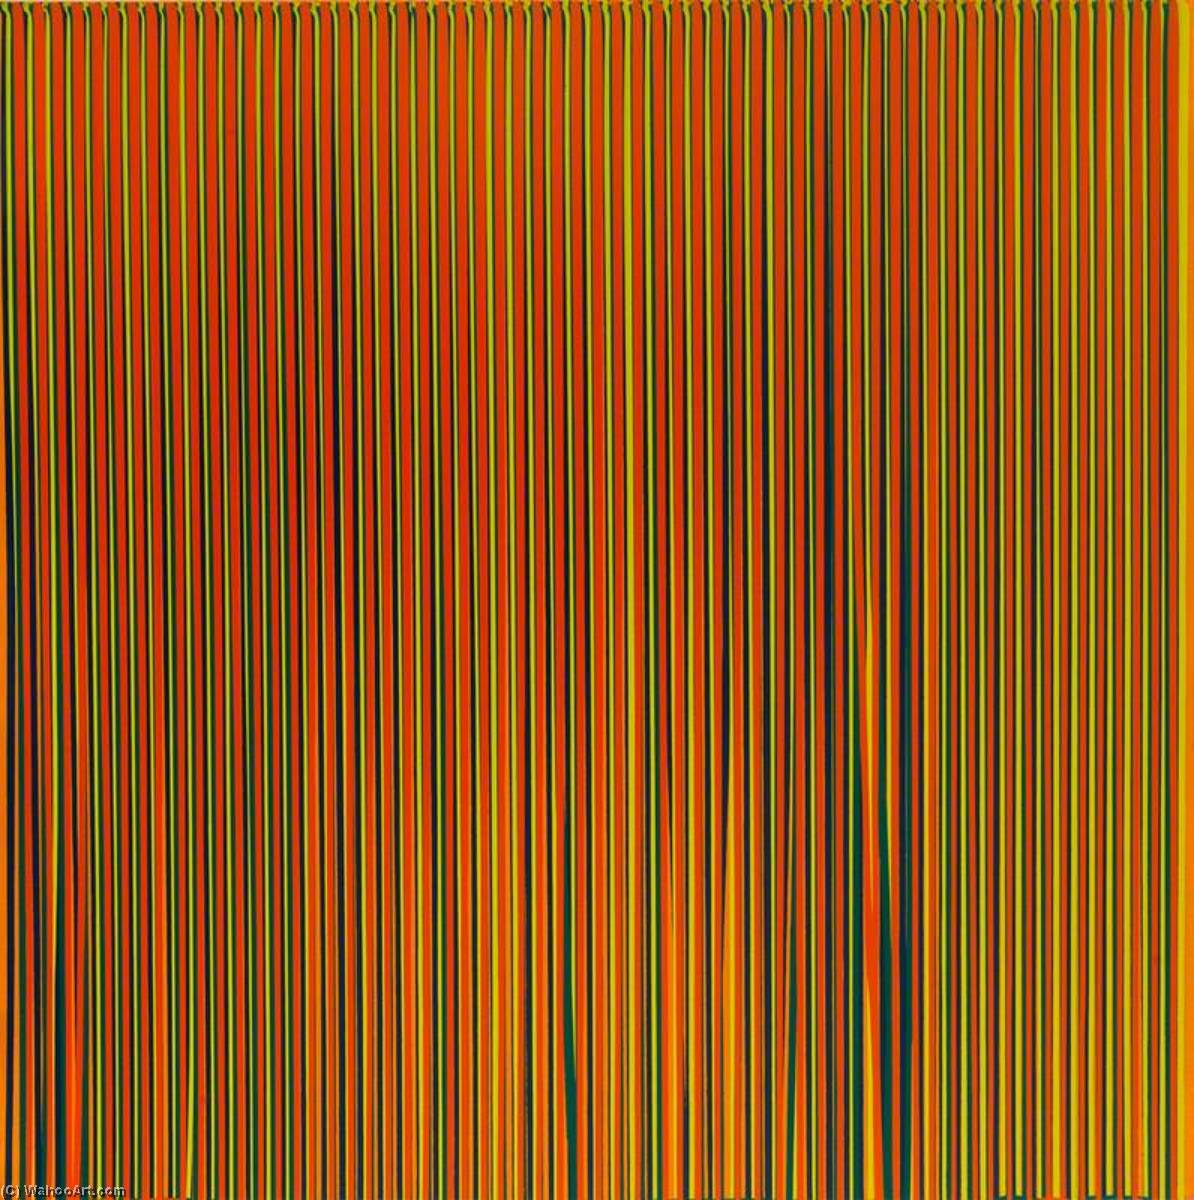 Wikioo.org - Bách khoa toàn thư về mỹ thuật - Vẽ tranh, Tác phẩm nghệ thuật Ian Davenport - Poured Lines Light Orange, Blue, Yellow, Dark Green and Orange